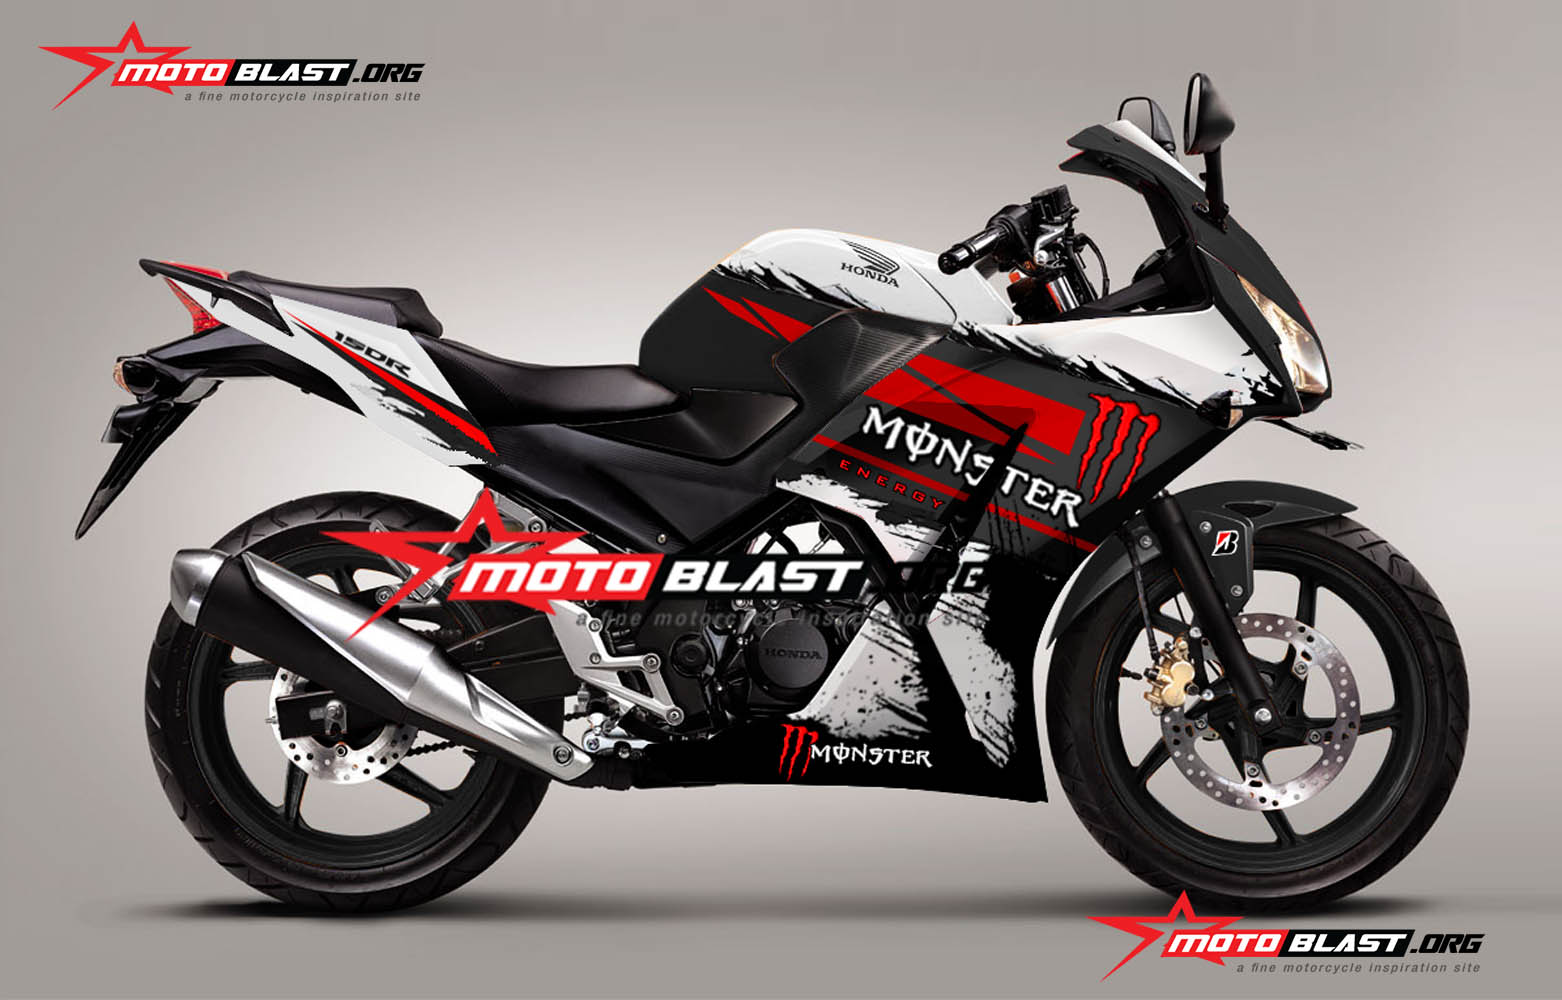 Grafis Inspirasi Modif Striping Honda CBR150R K45 Monster Energy